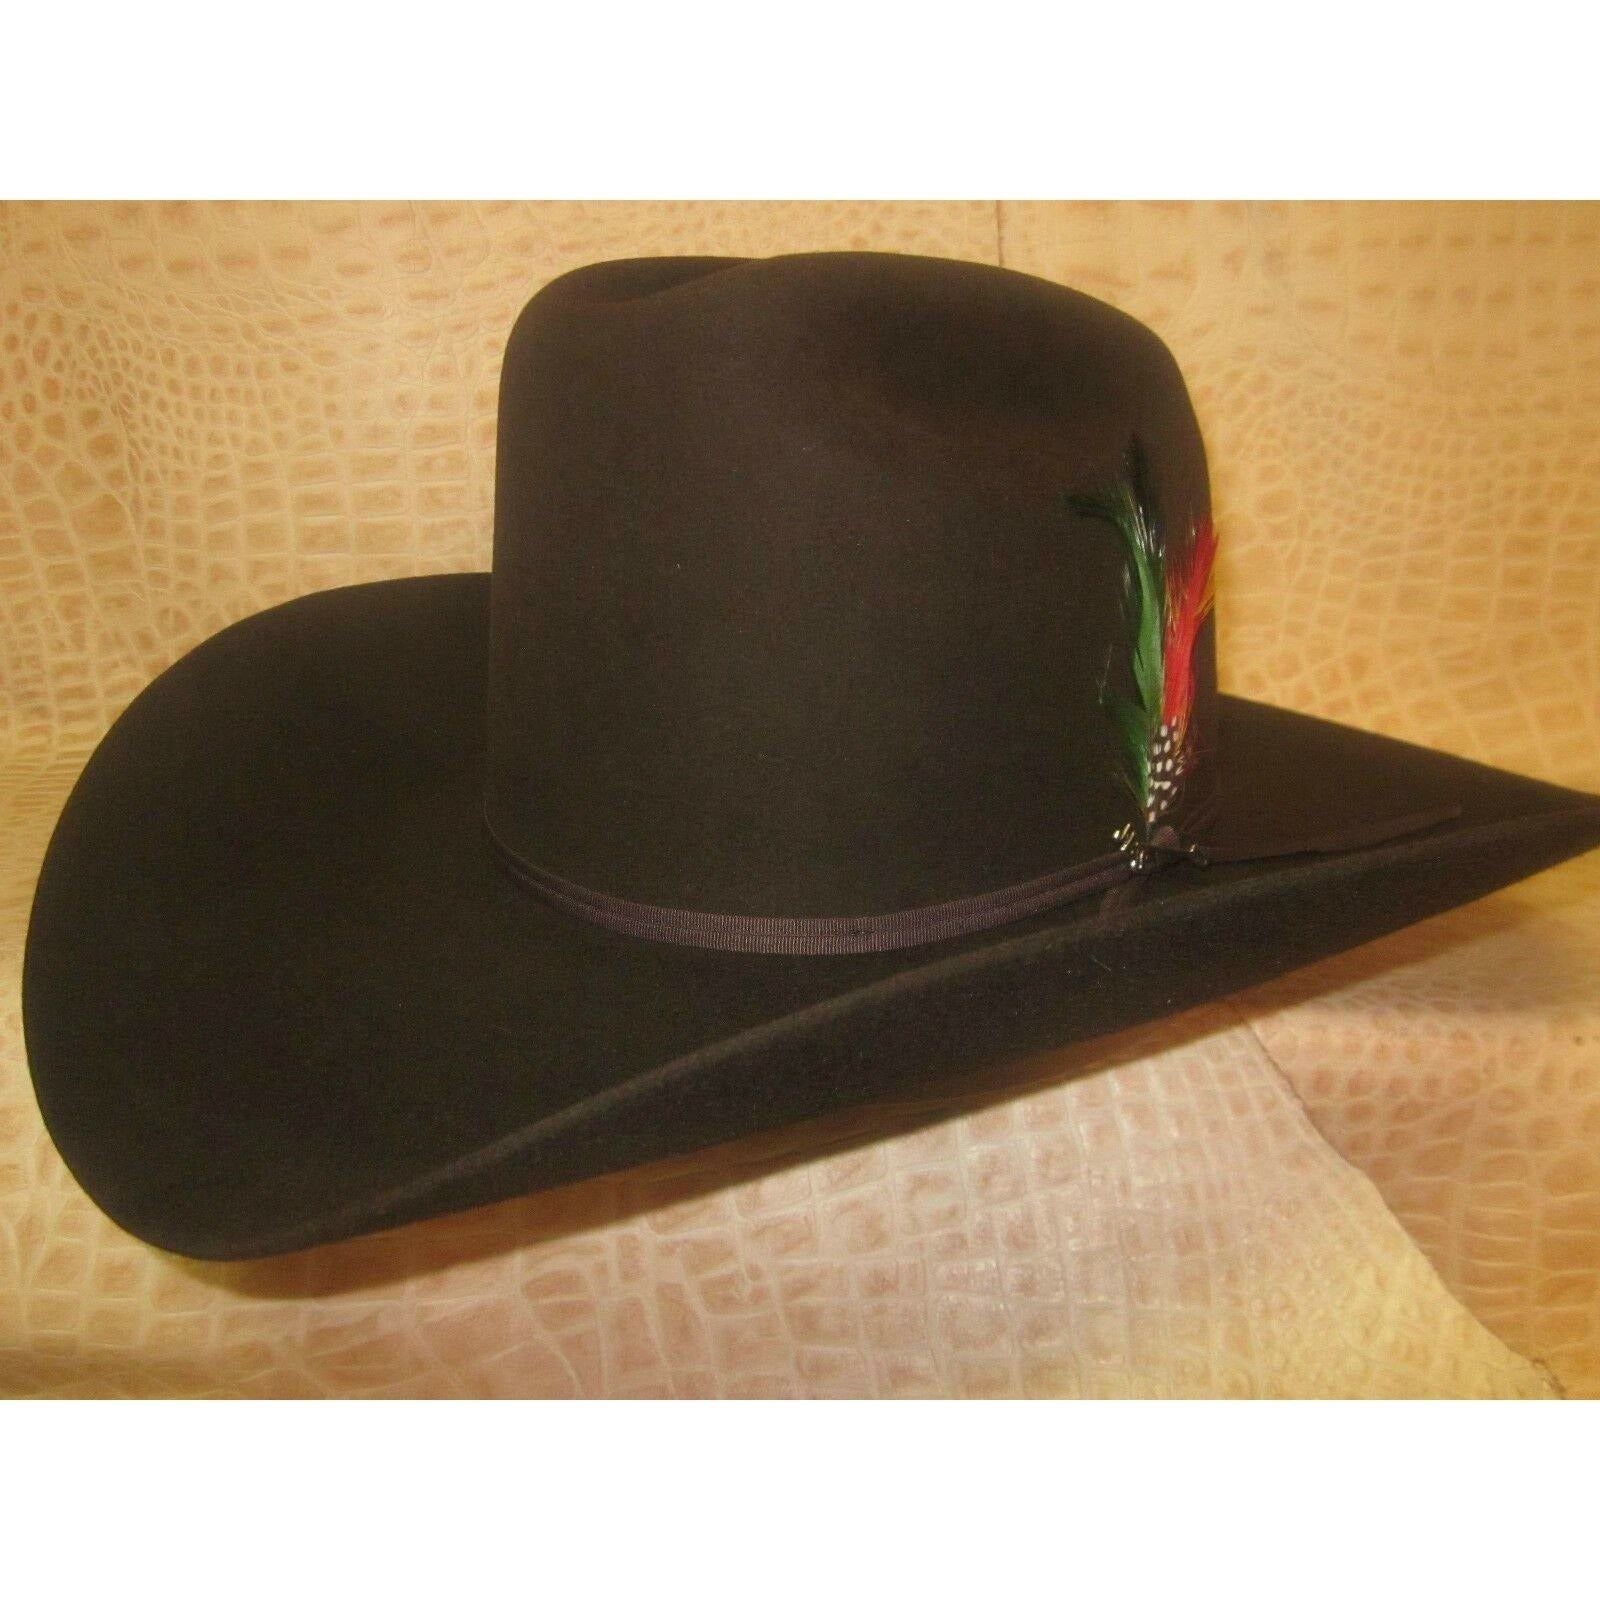 Stetson Rancher Chocolate 6X Beaver Fur Felt Western Cowboy Hat - CWesternwear